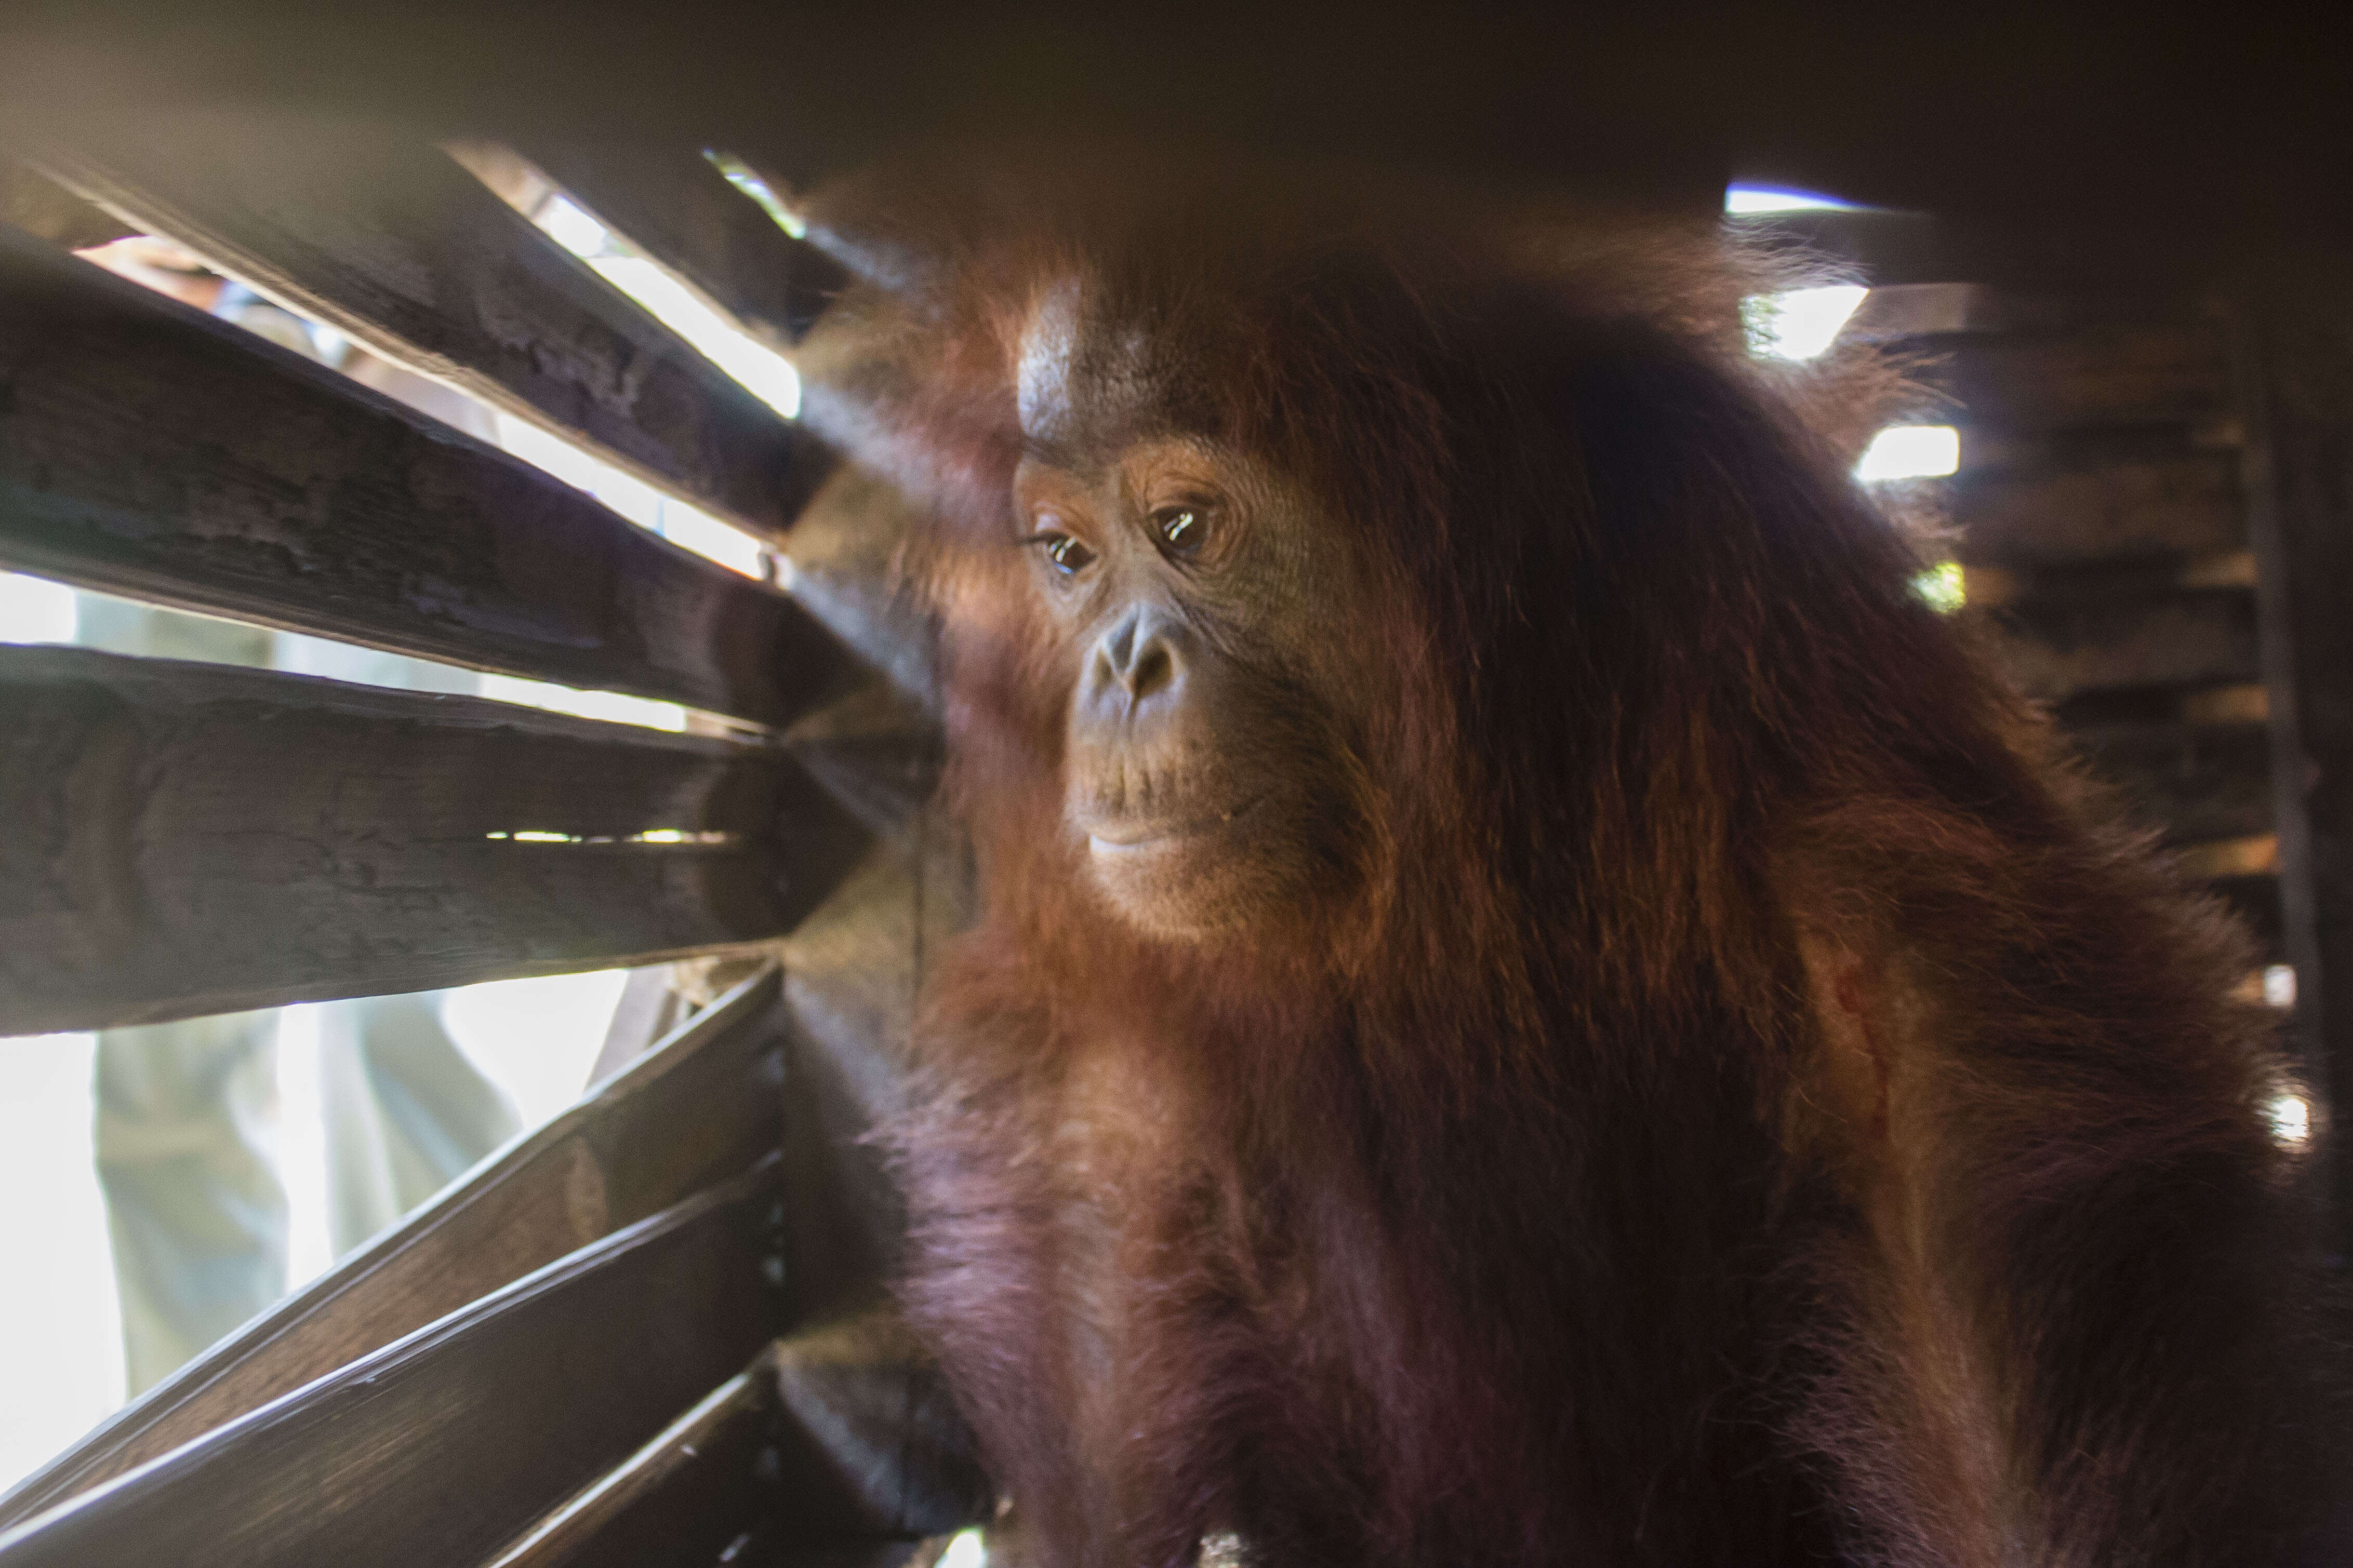 Orangutan inside wooden box